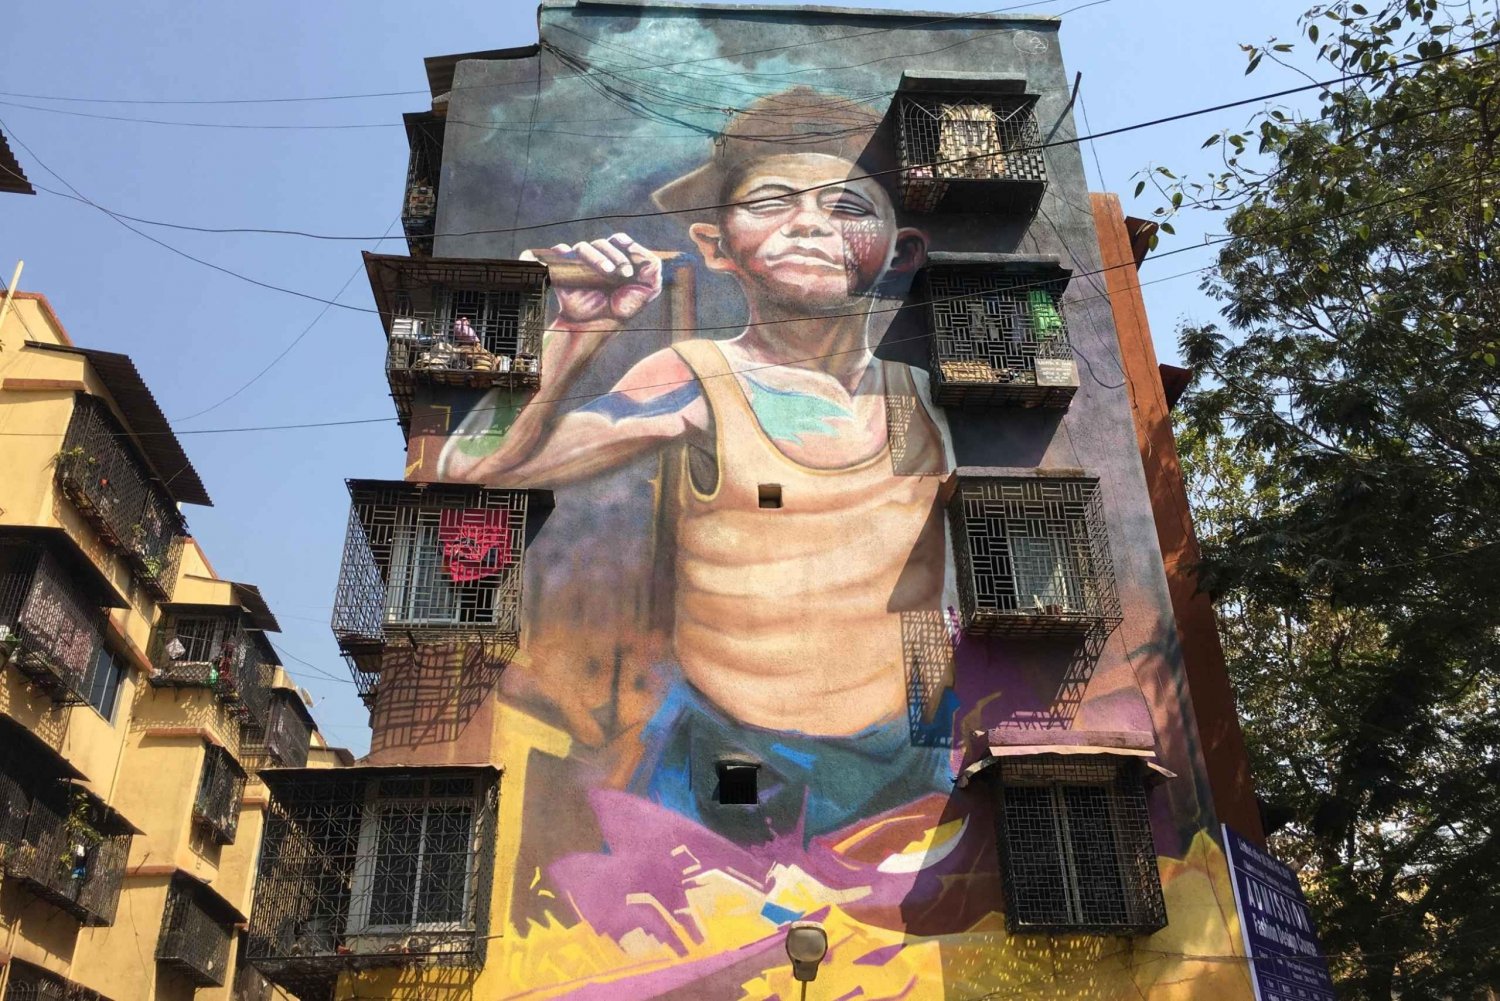 Dharavi: Street Art Walking Tour